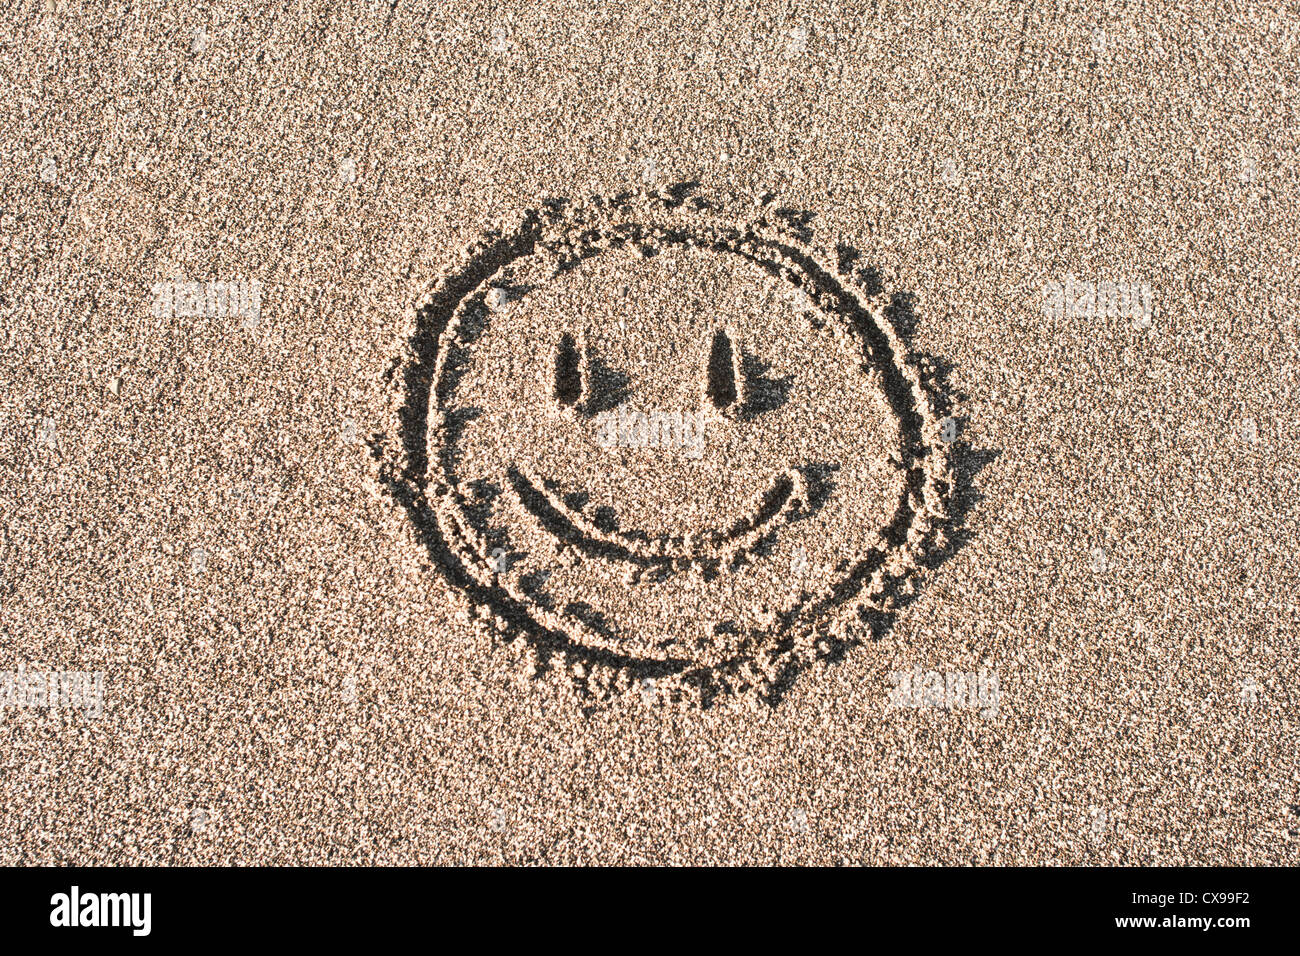 Smiley dessiné sur le sable de la plage Banque D'Images